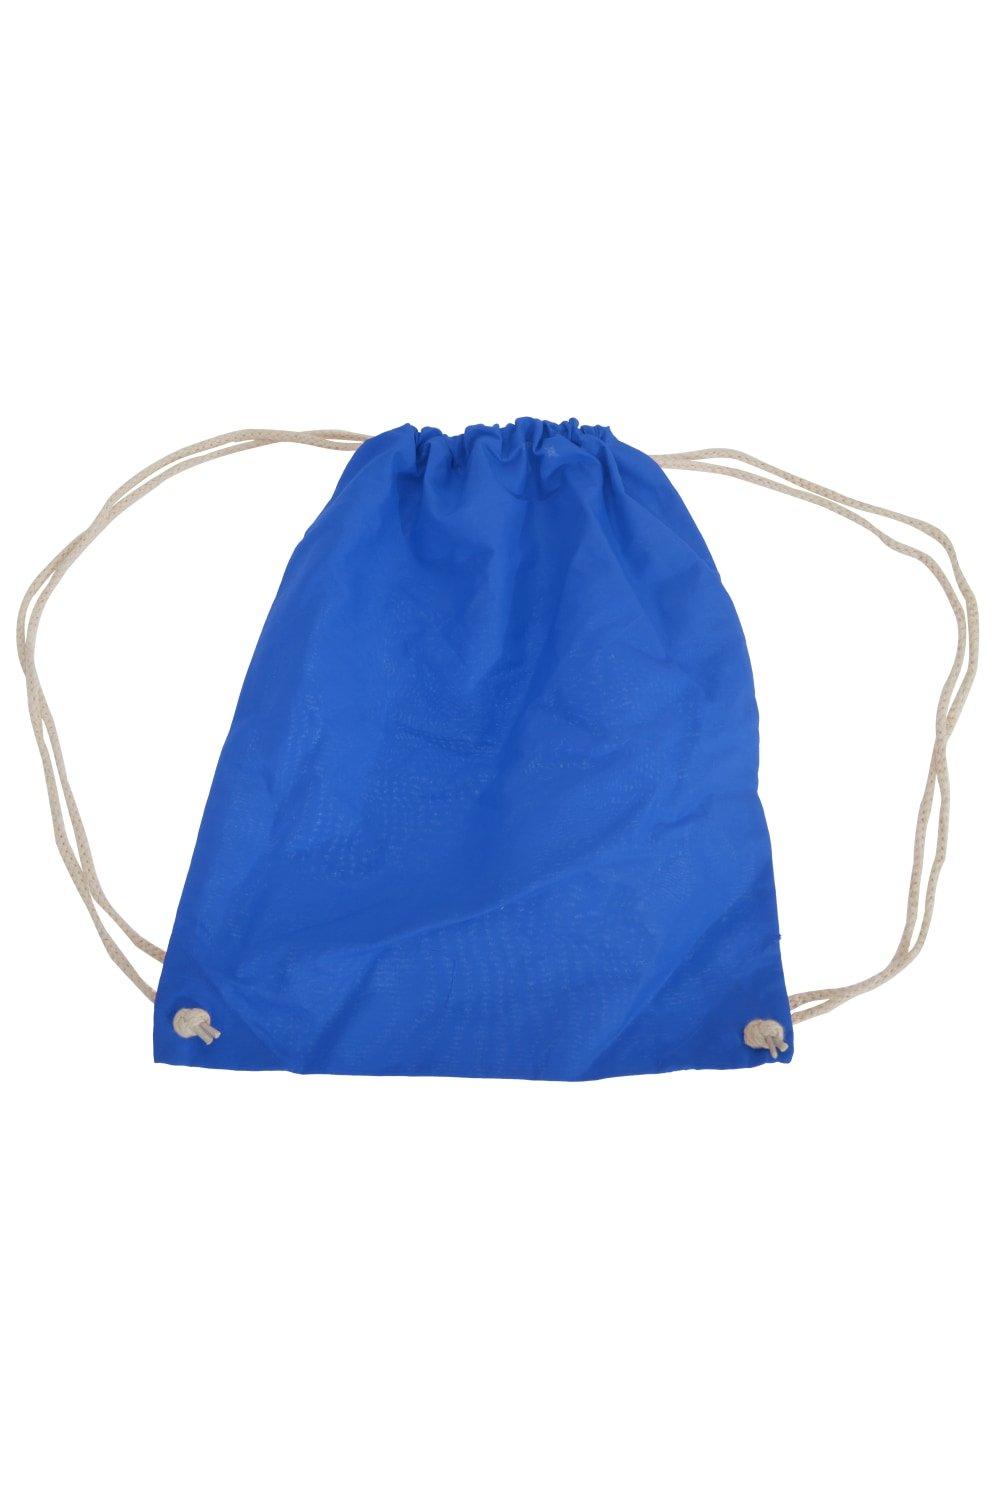 Хлопковая сумка Gymsac - 12 литров Westford Mill, синий